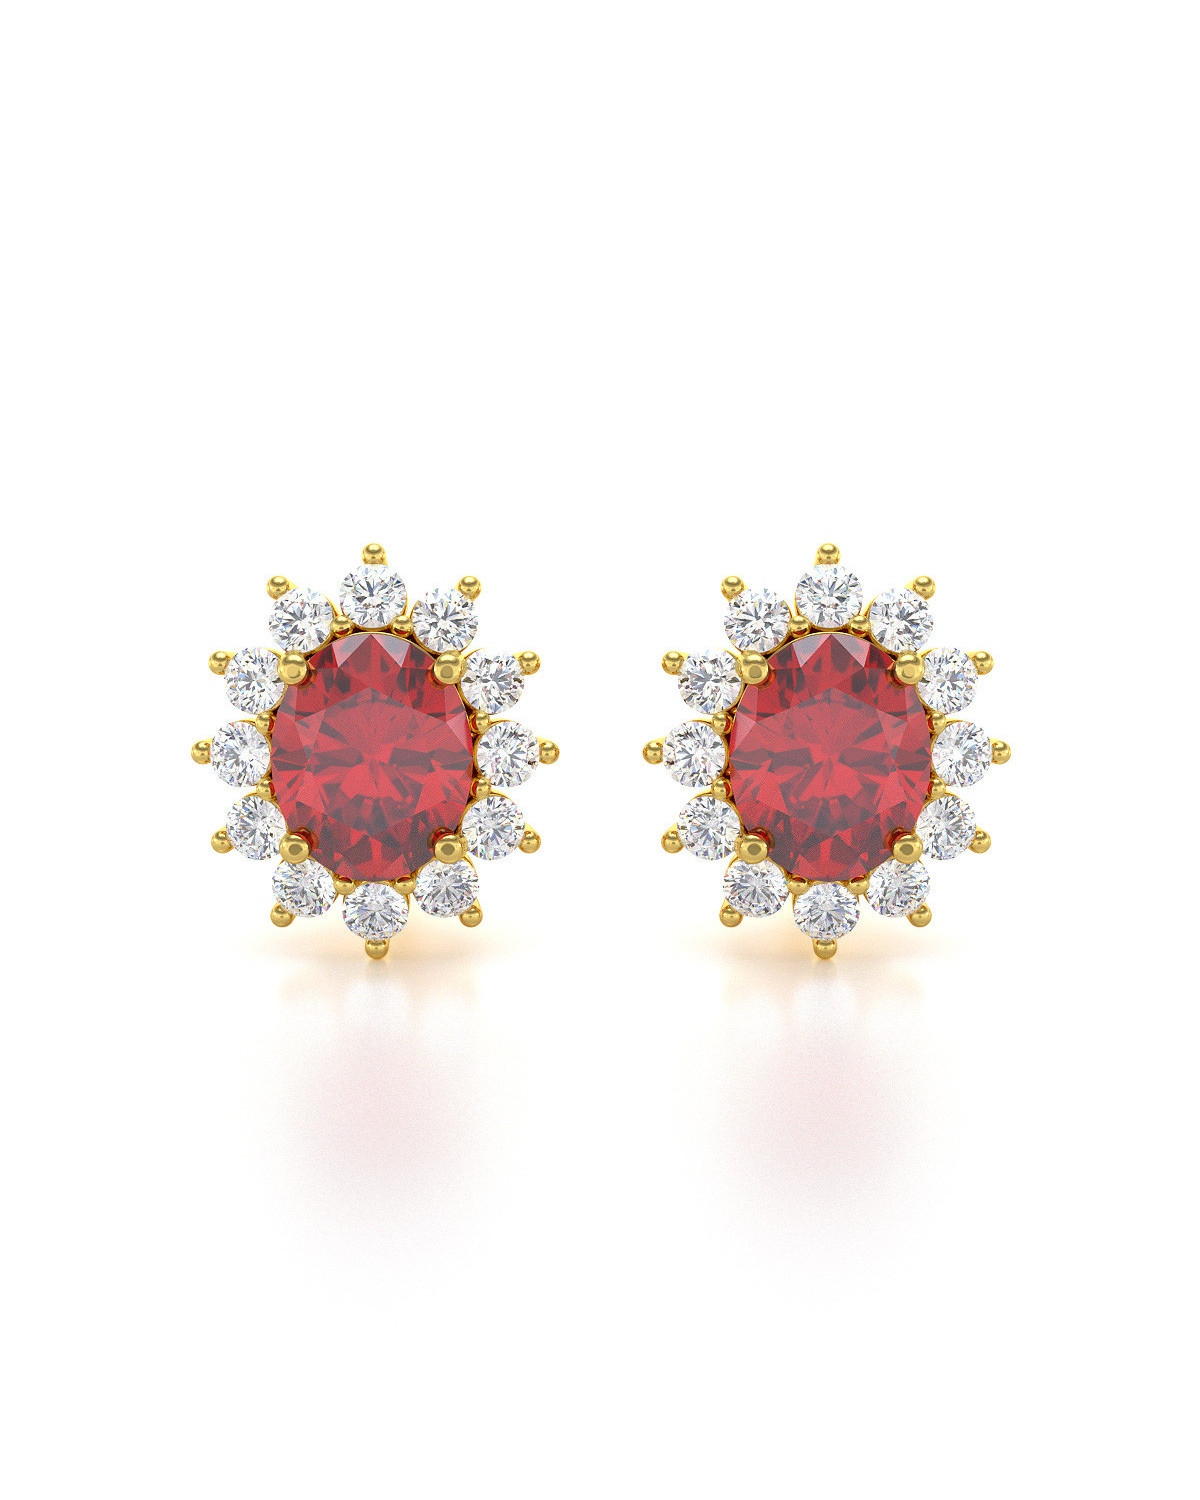 14K Gold Ruby Earrings ADEN - 1